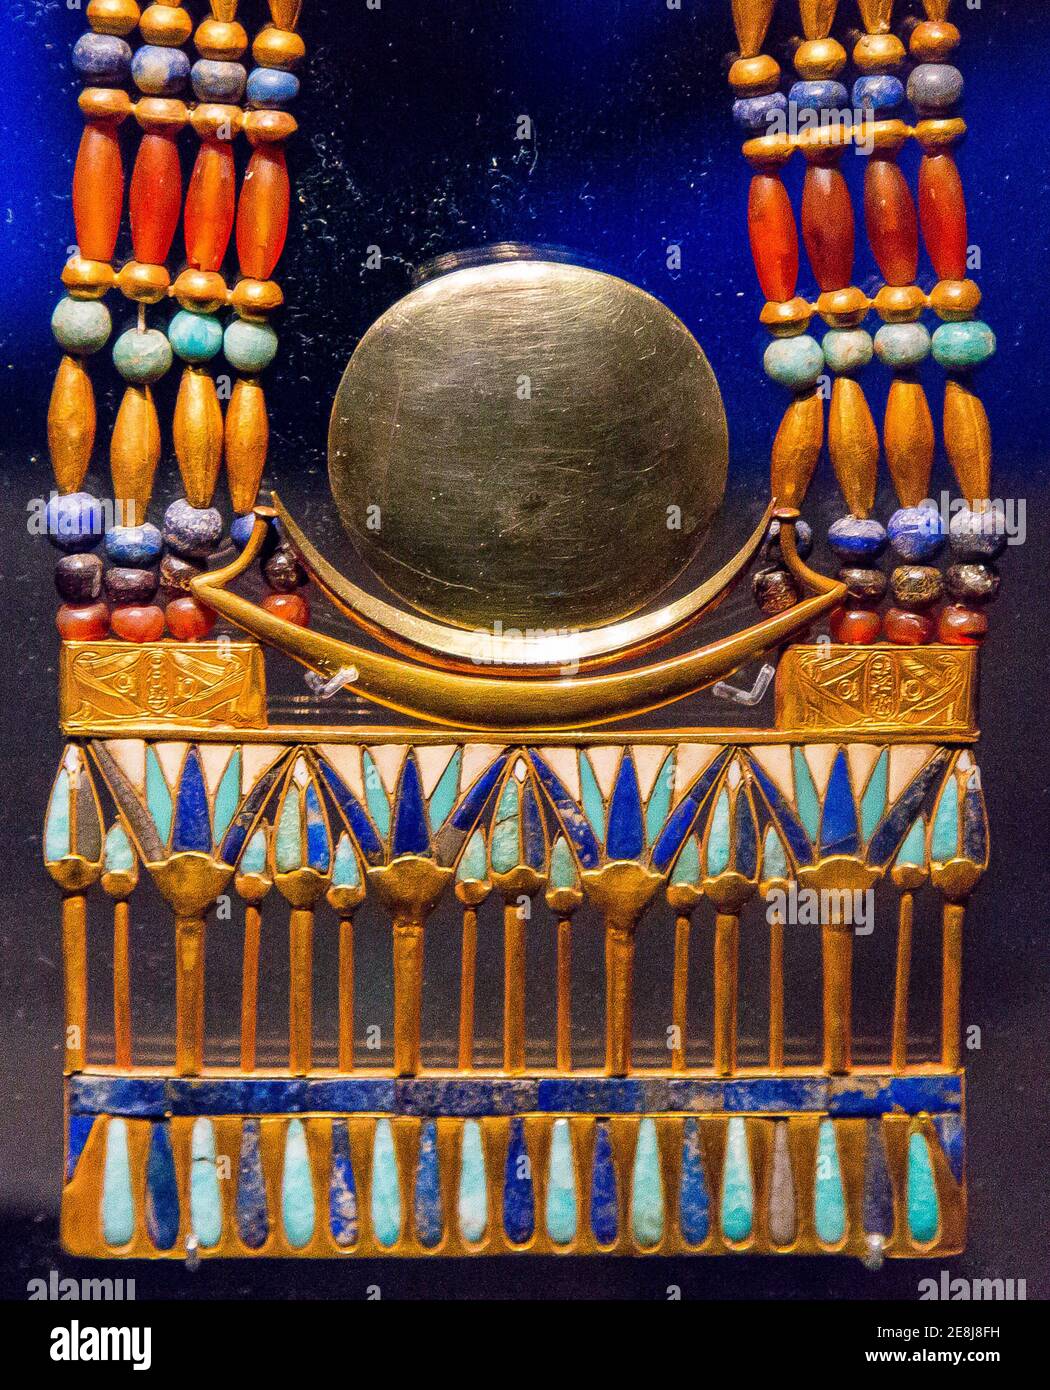 Egypte, bijoux Toutankhamon, de sa tombe à Louxor : pectoral montrant un disque lunaire en argent (électrum) et un croissant lunaire en argent. Banque D'Images